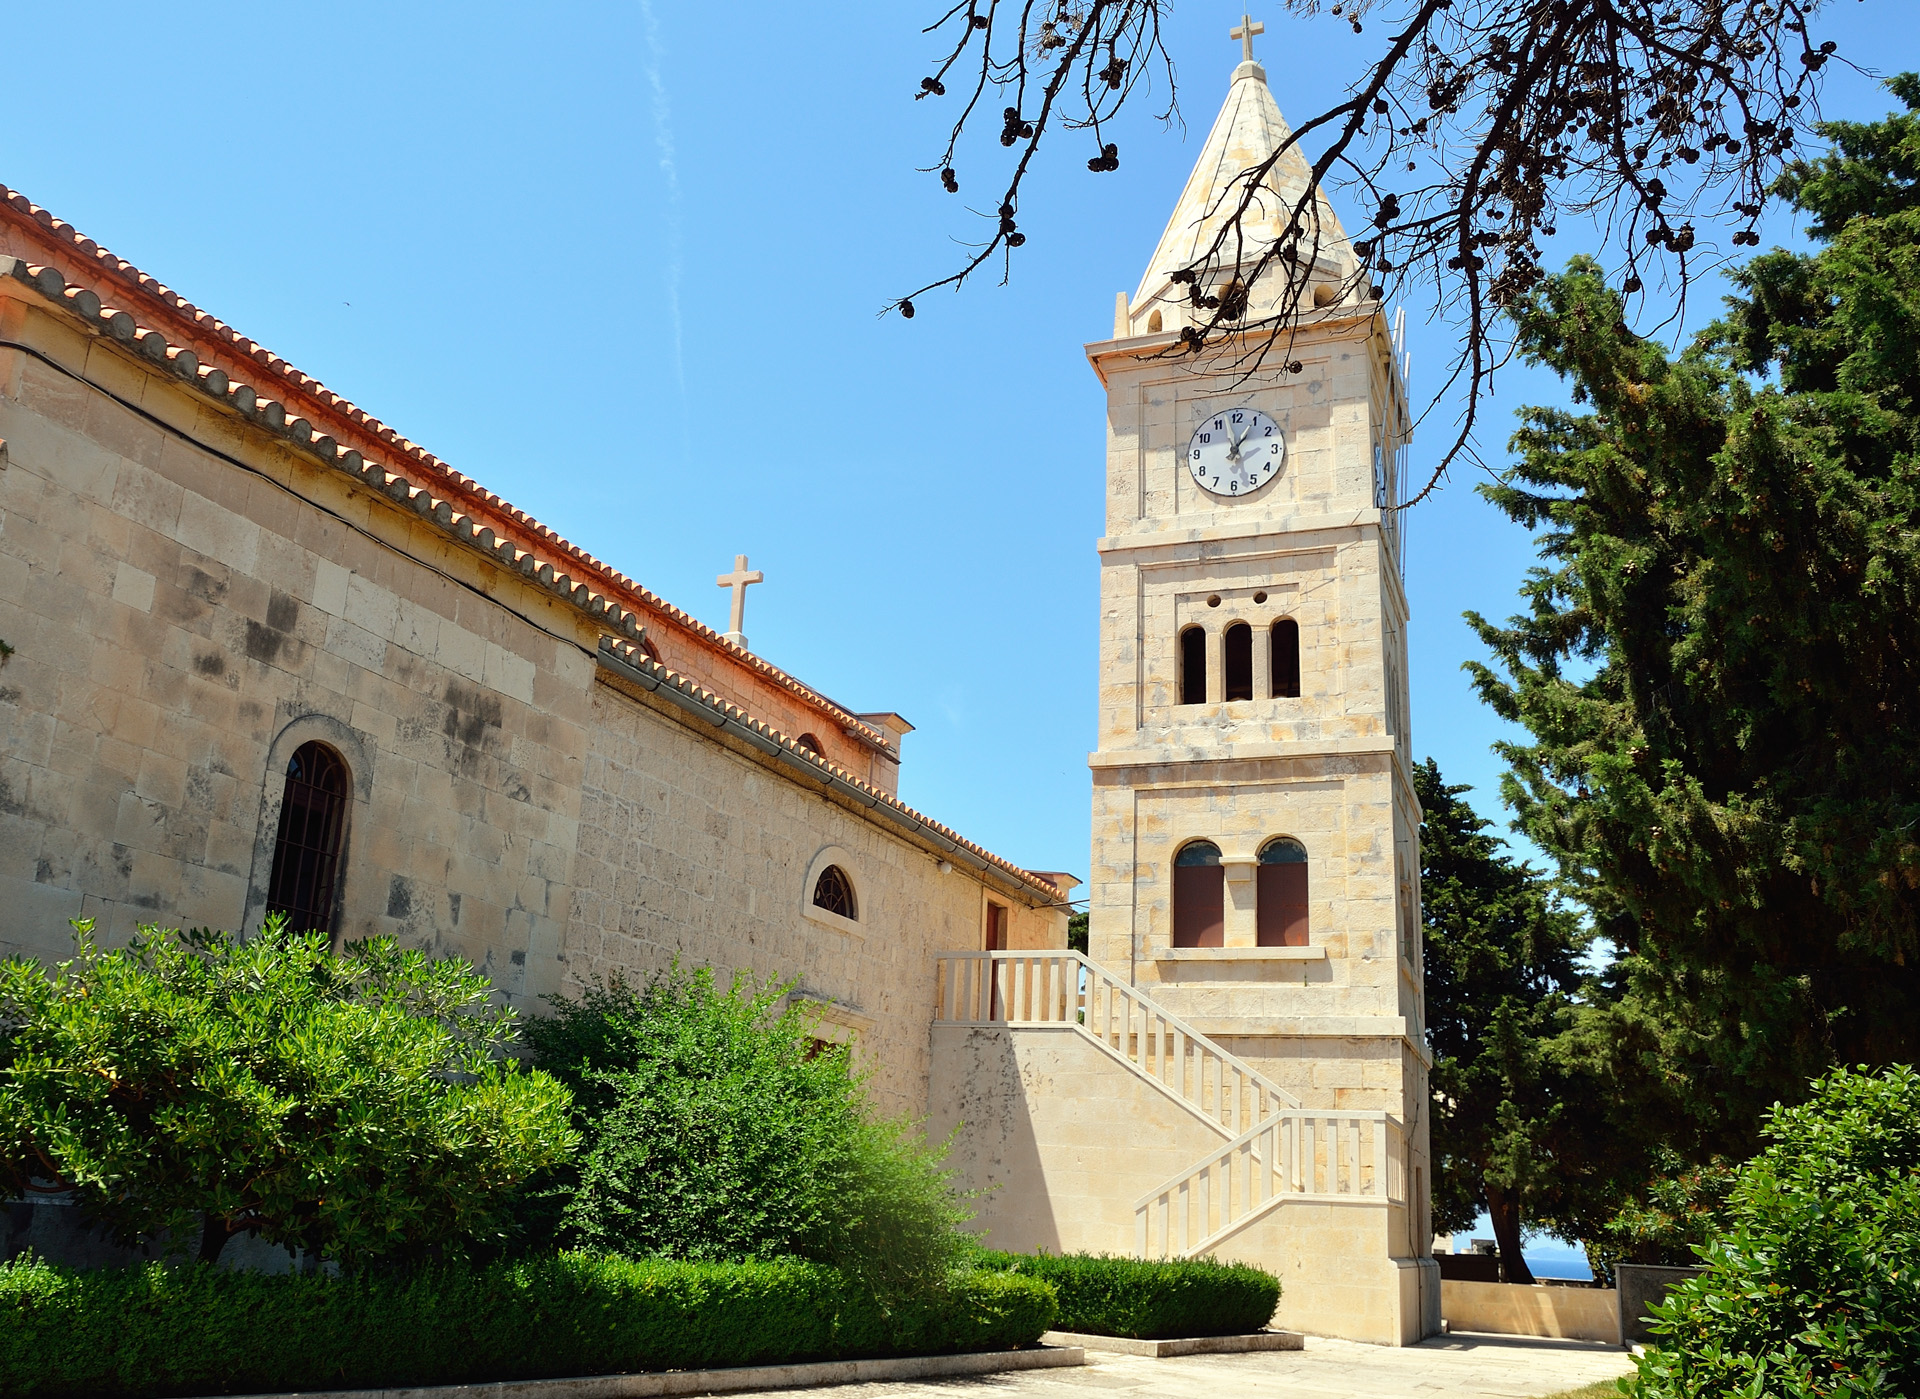 Wir spazieren hinauf zur Kirche Sv. Juraj. Die Kirche steht an der höchsten Stelle in Primosten und ist das Wahrzeichen des Ortes Primosten. Sie wurde im 15. Jahrhundert erbaut und birgt den Sargophag des Bischofs Arneric, der noch heute von vielen Dalmatinern der Region verehrt wird.